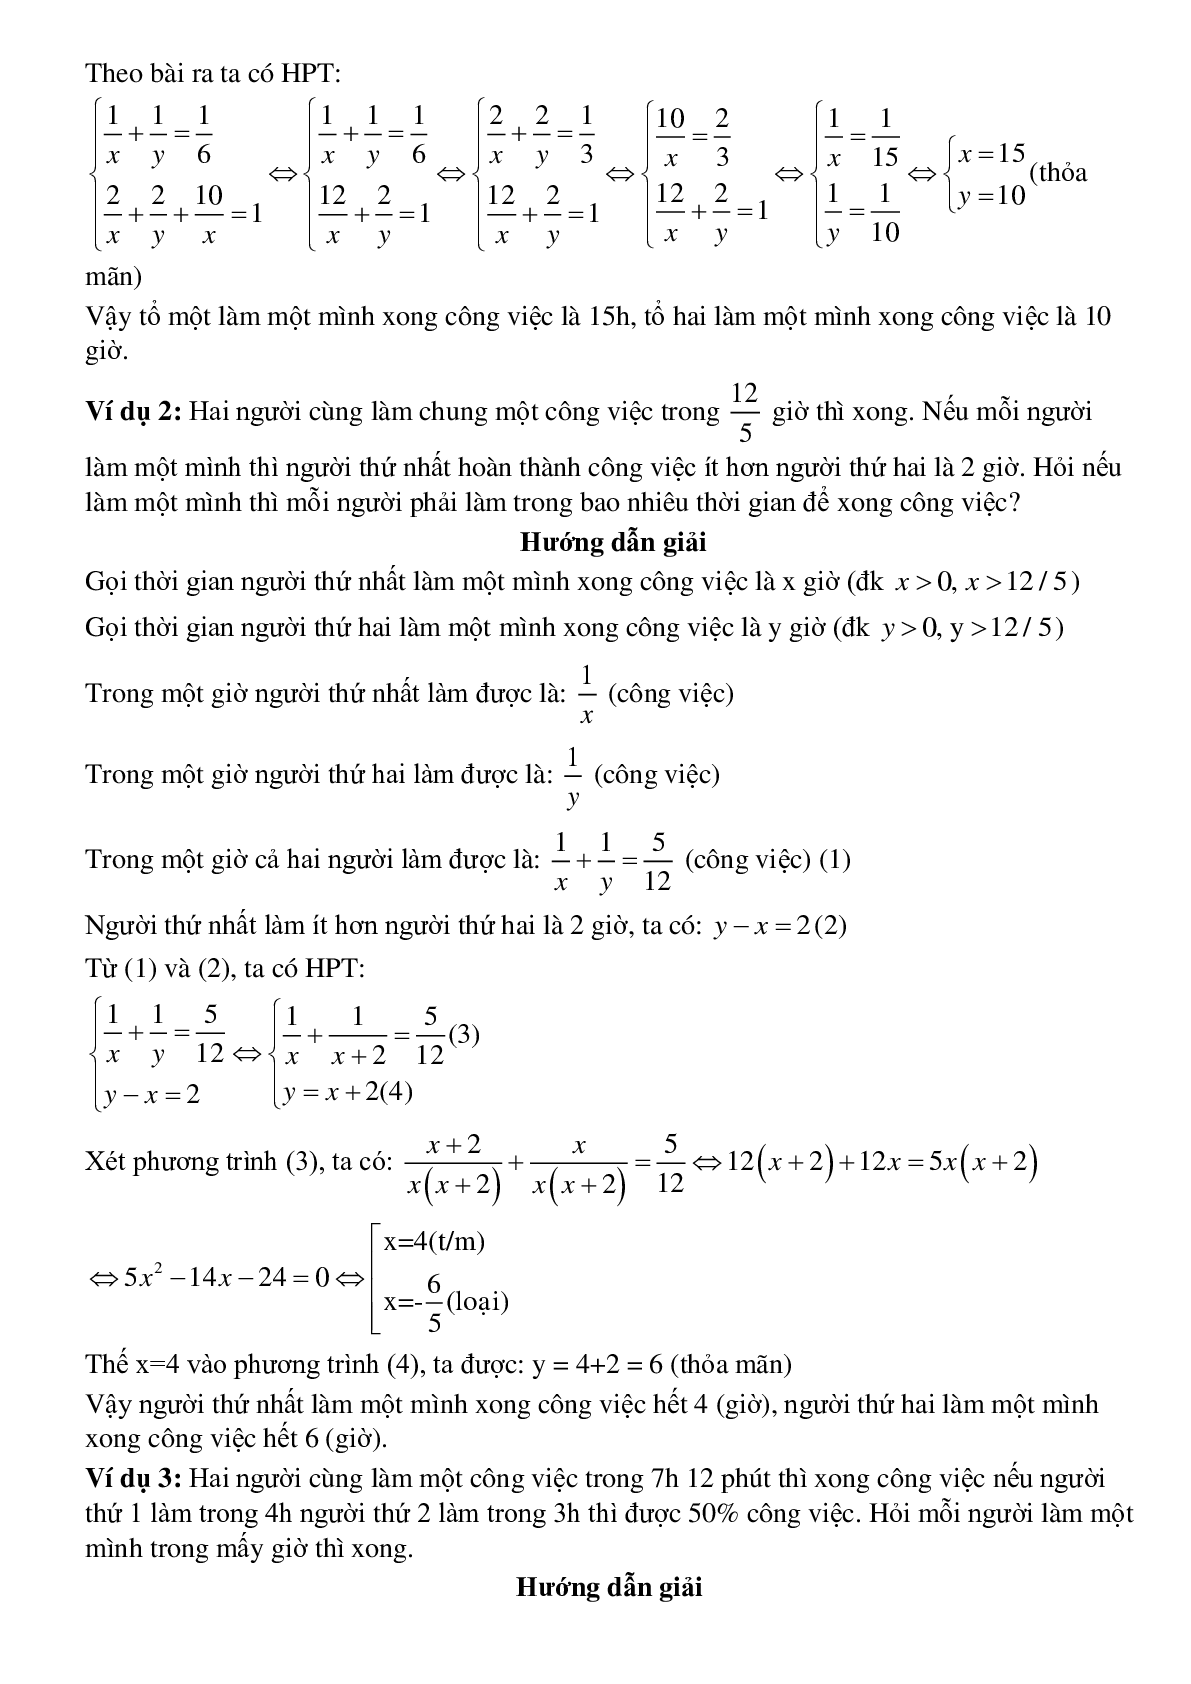 Giải bài toán bằng cách lập phương trình, hệ phương trình - Bài toán làm chung làm riêng (trang 2)